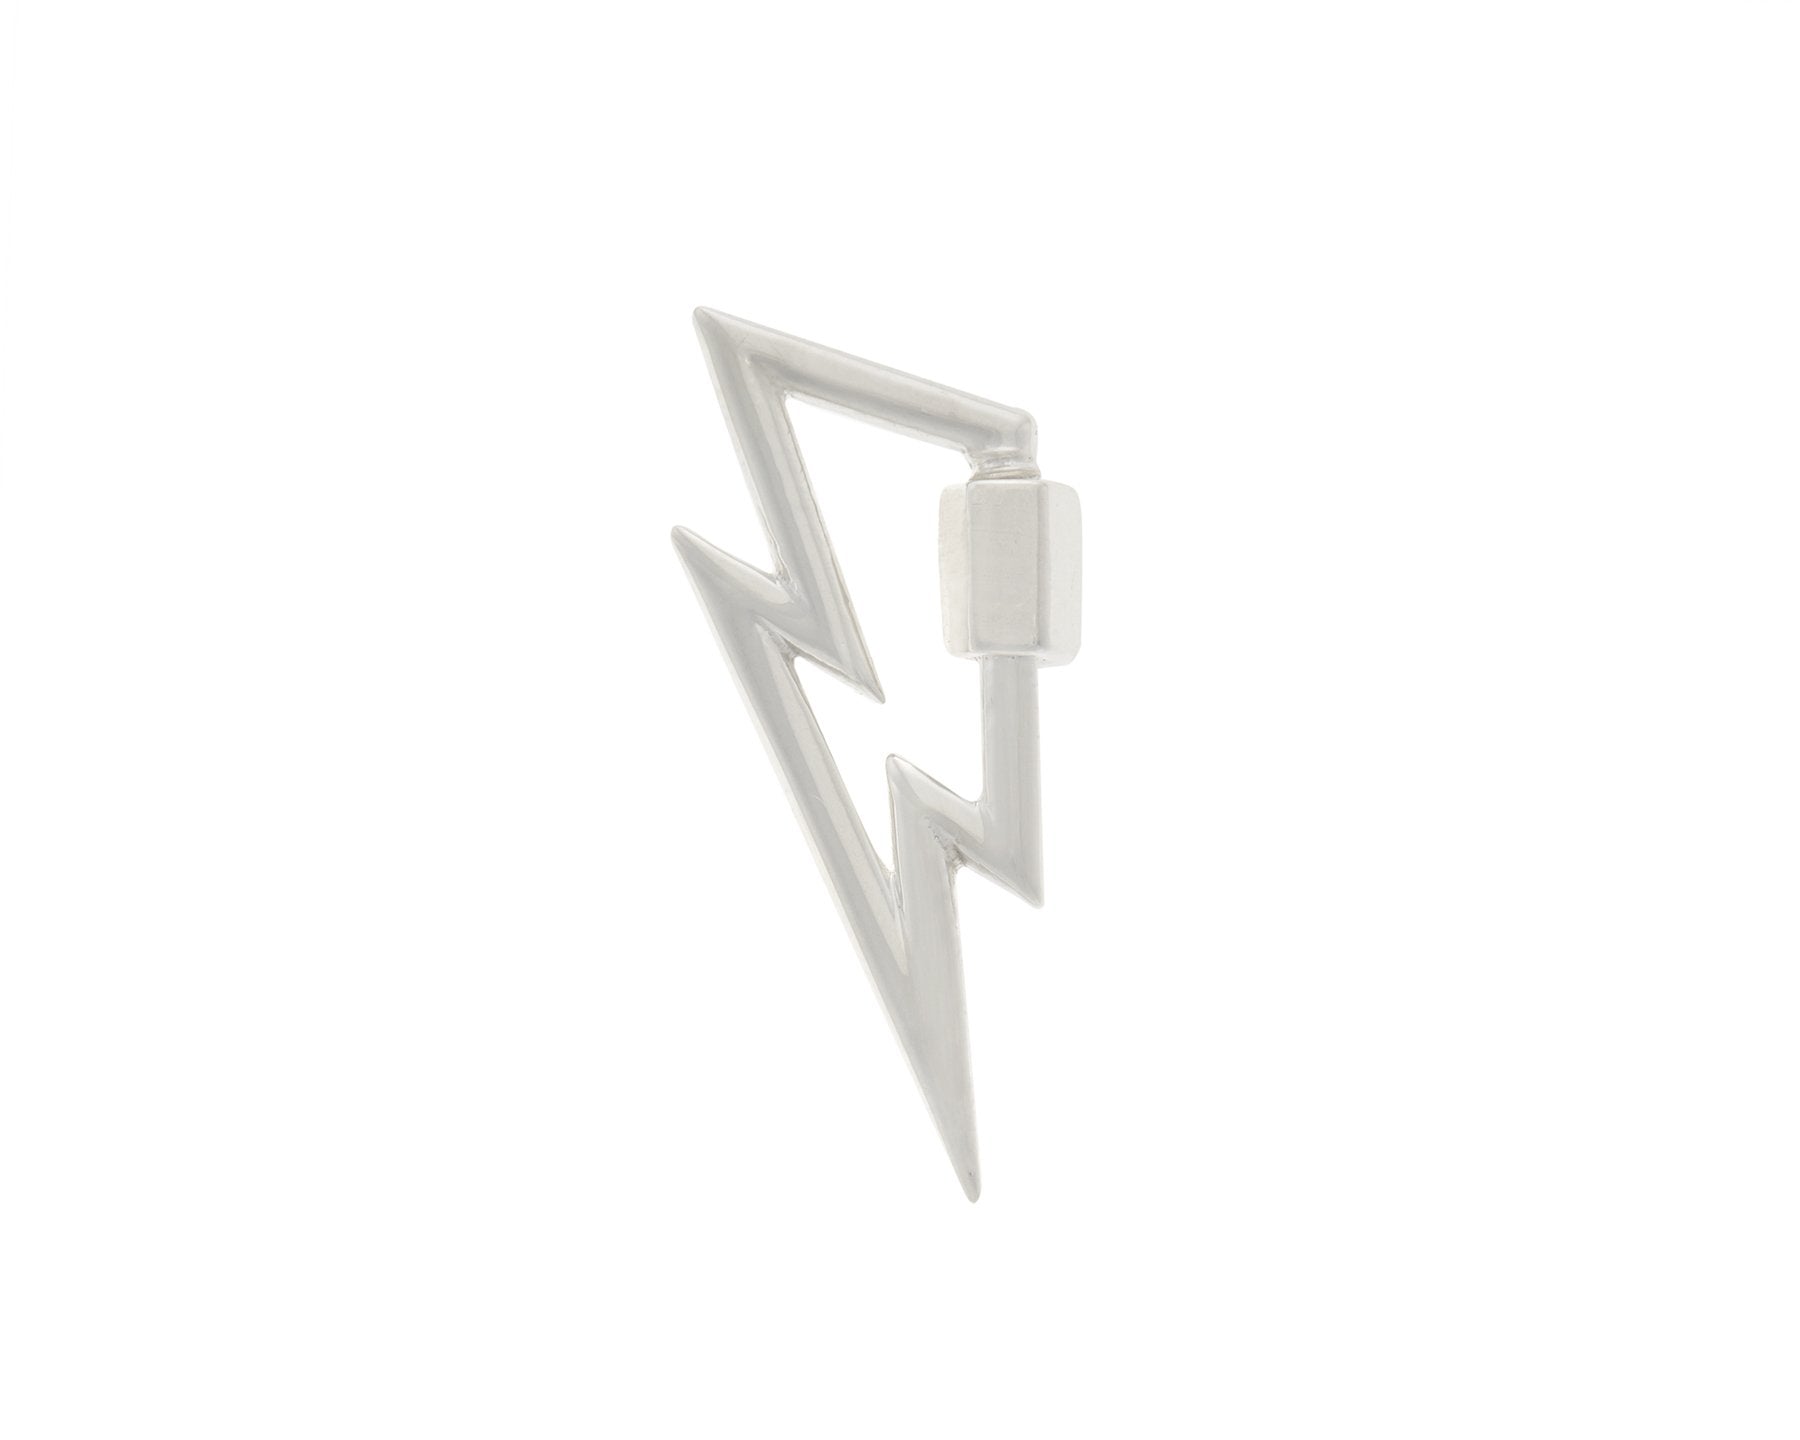 Silver lightning bolt pendant lock against white backdrop